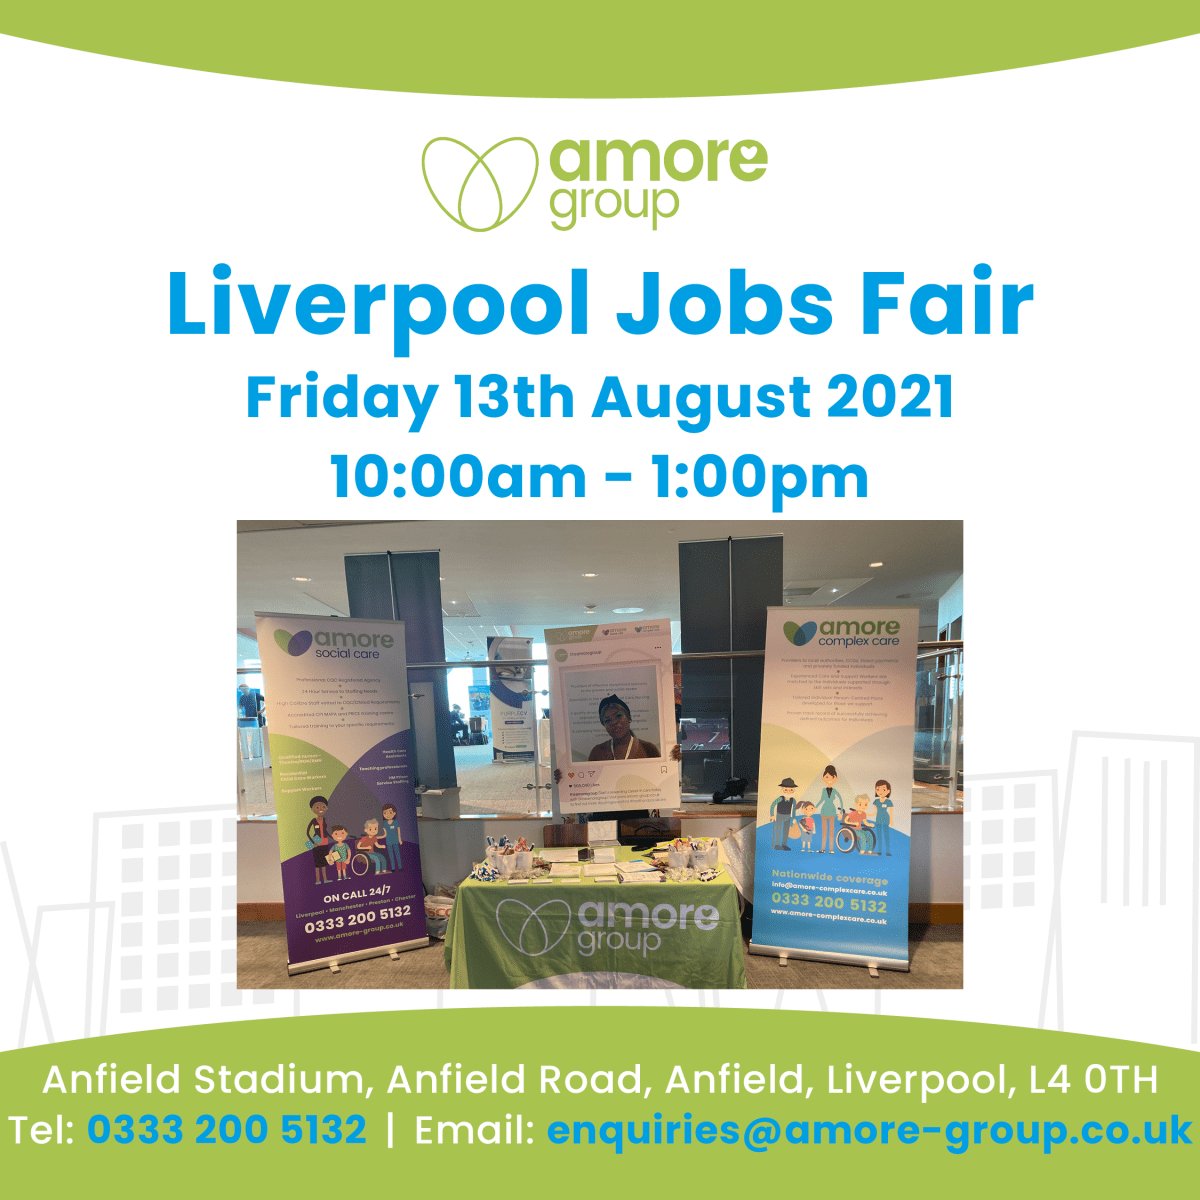 Liverpool Jobs Fair